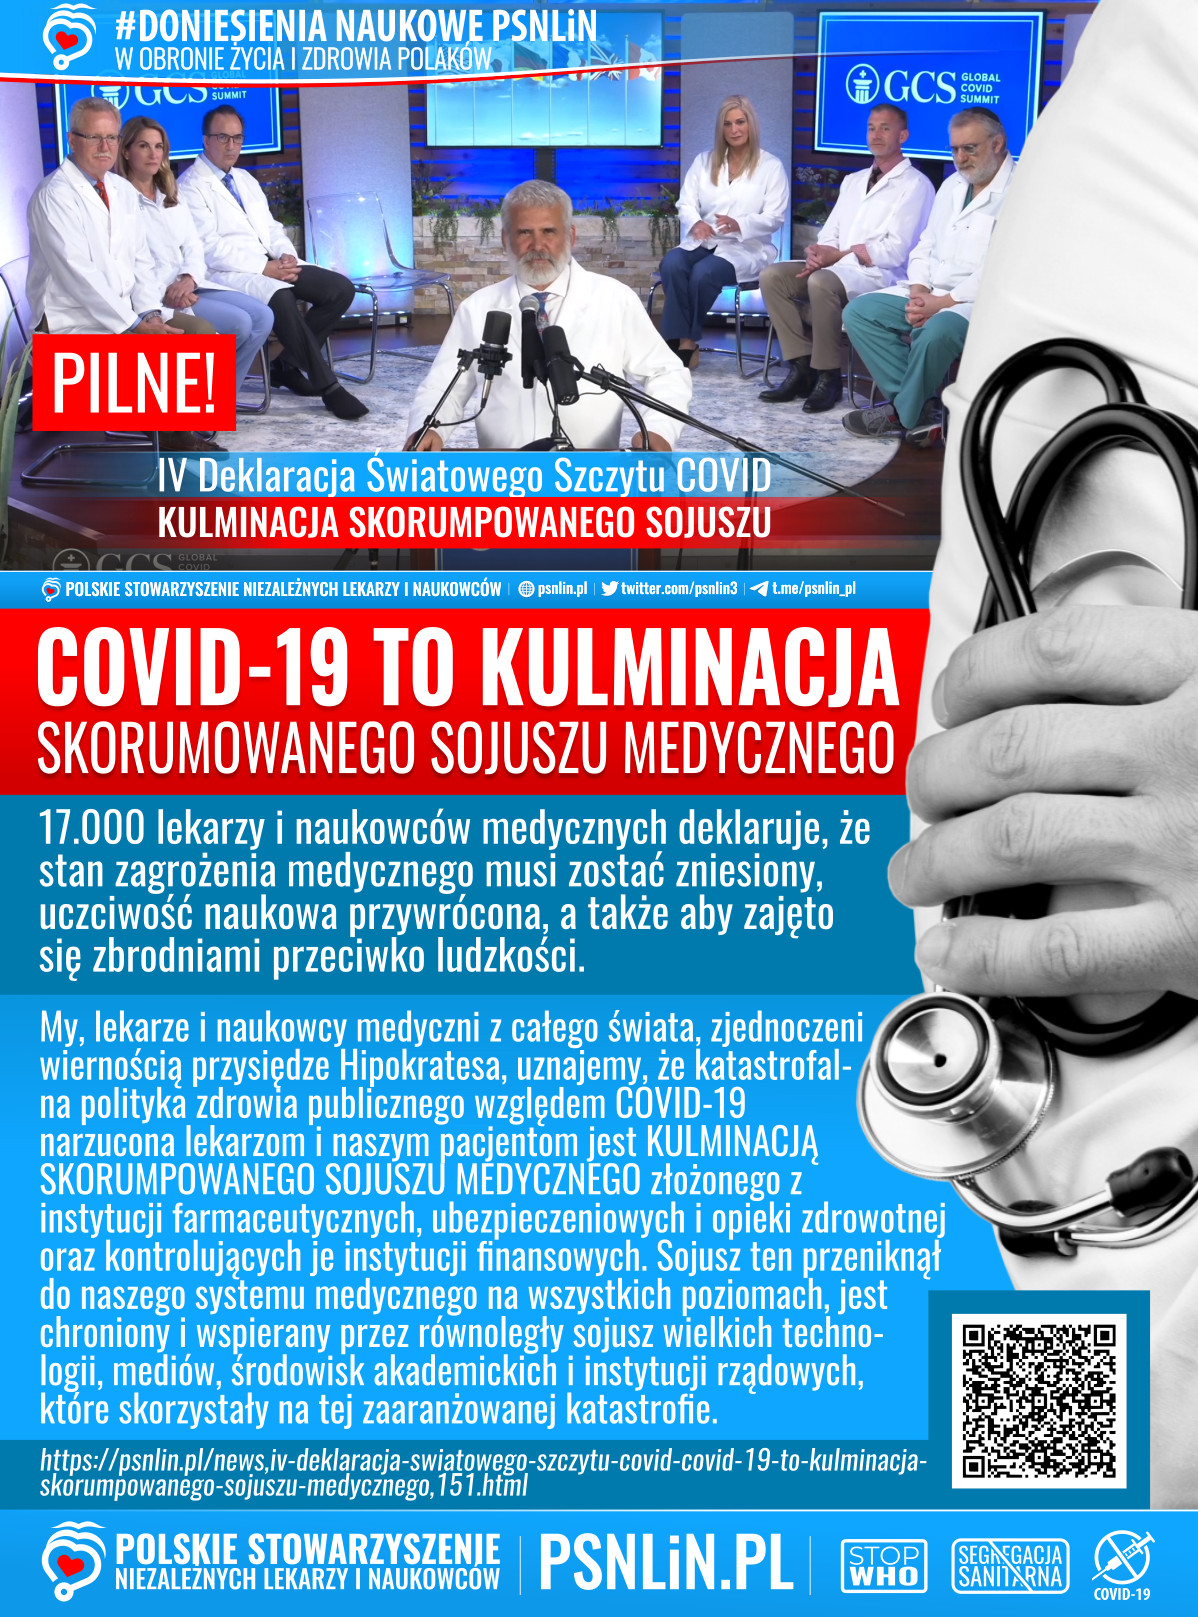 Doniesienia_naukowe_PSNLiN-Covid-19_to_kulminacja_skorumpowanego_sojuszu_medycznego